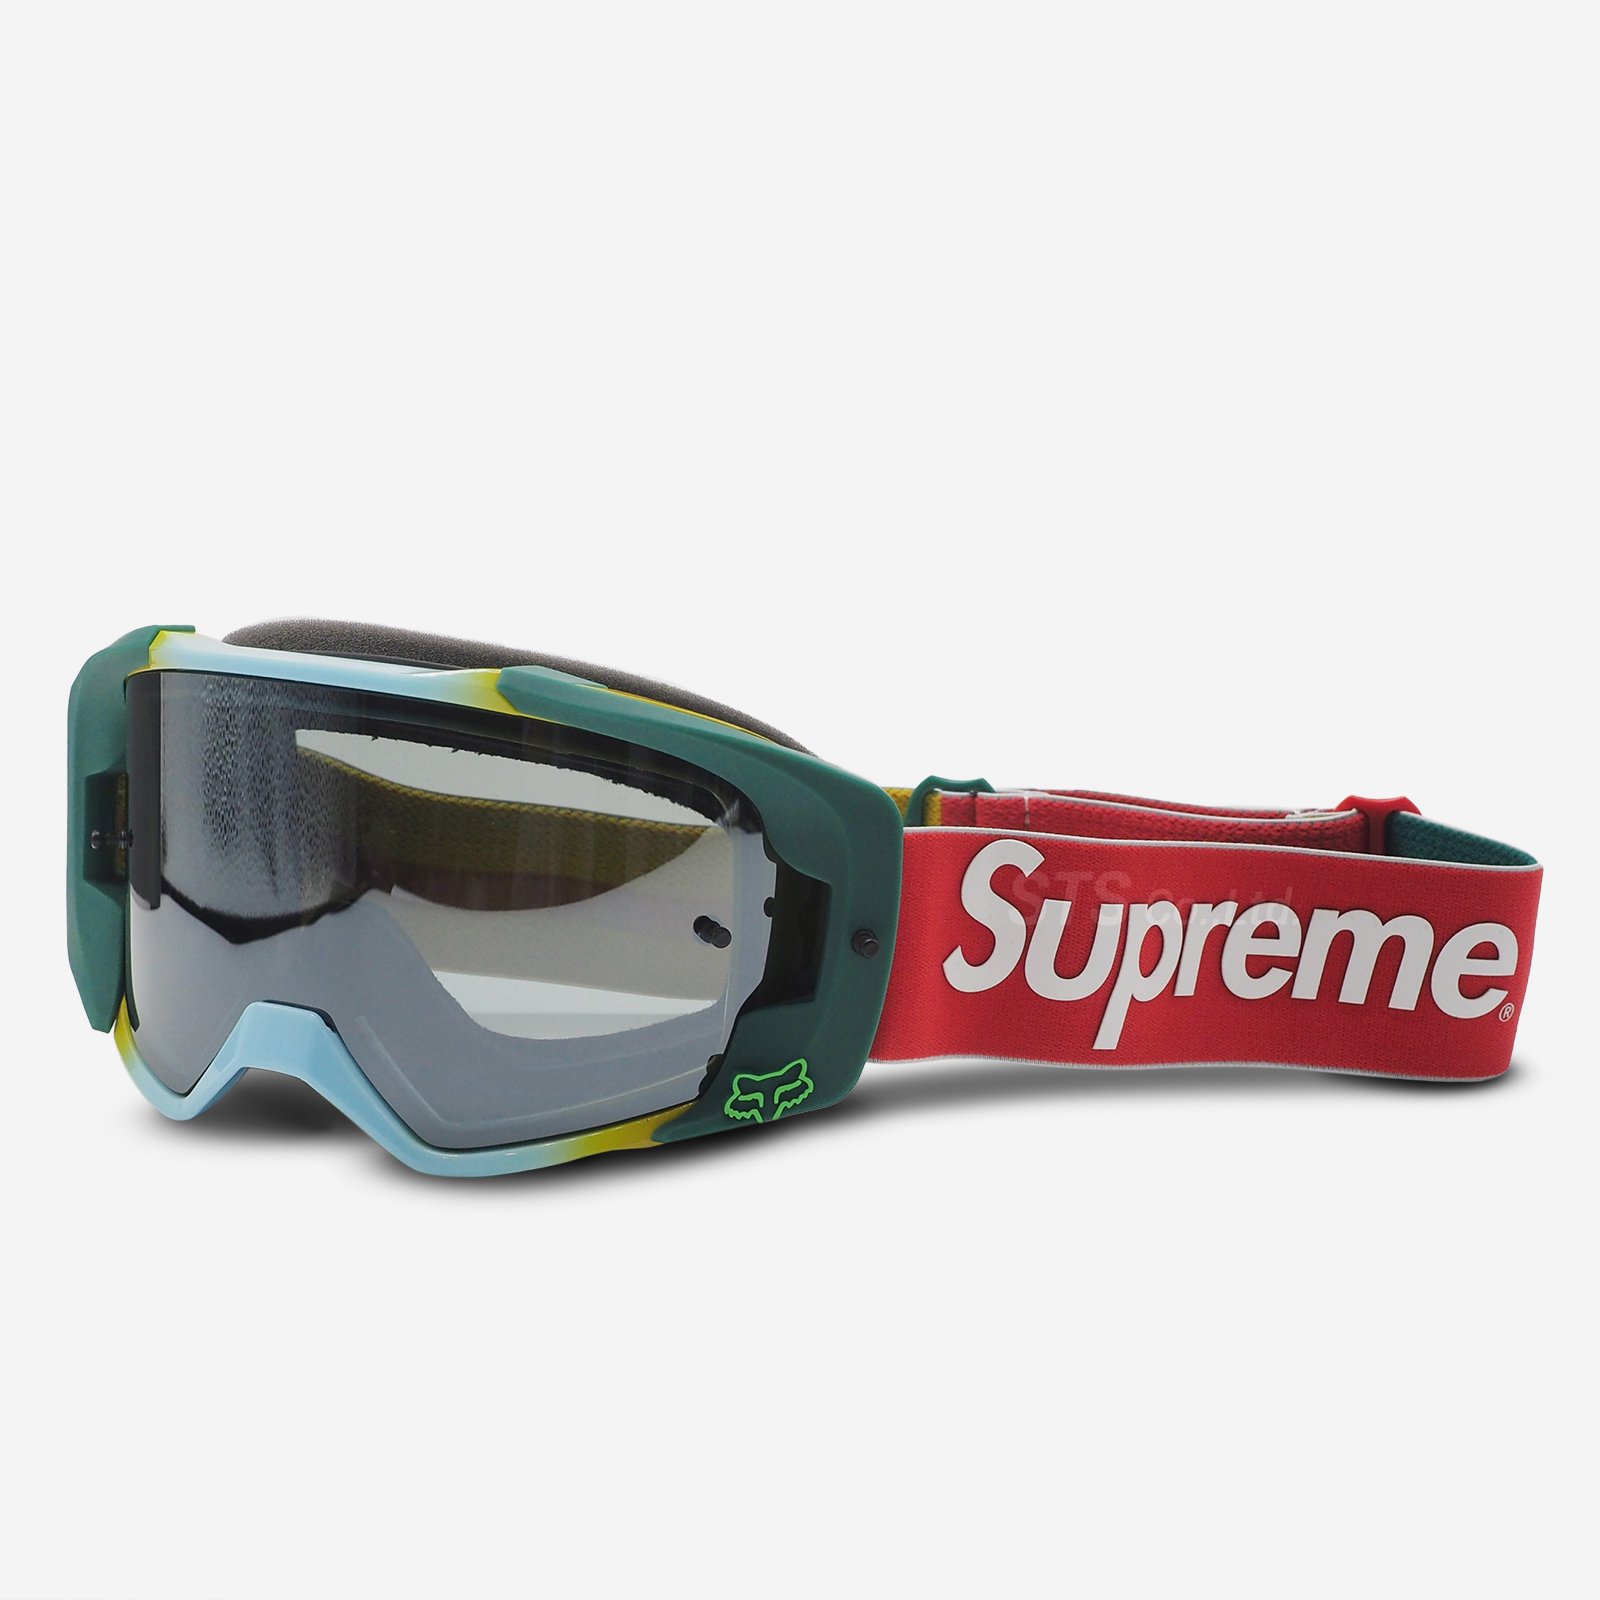 Supreme / Honda / Fox Racing Vue Goggles